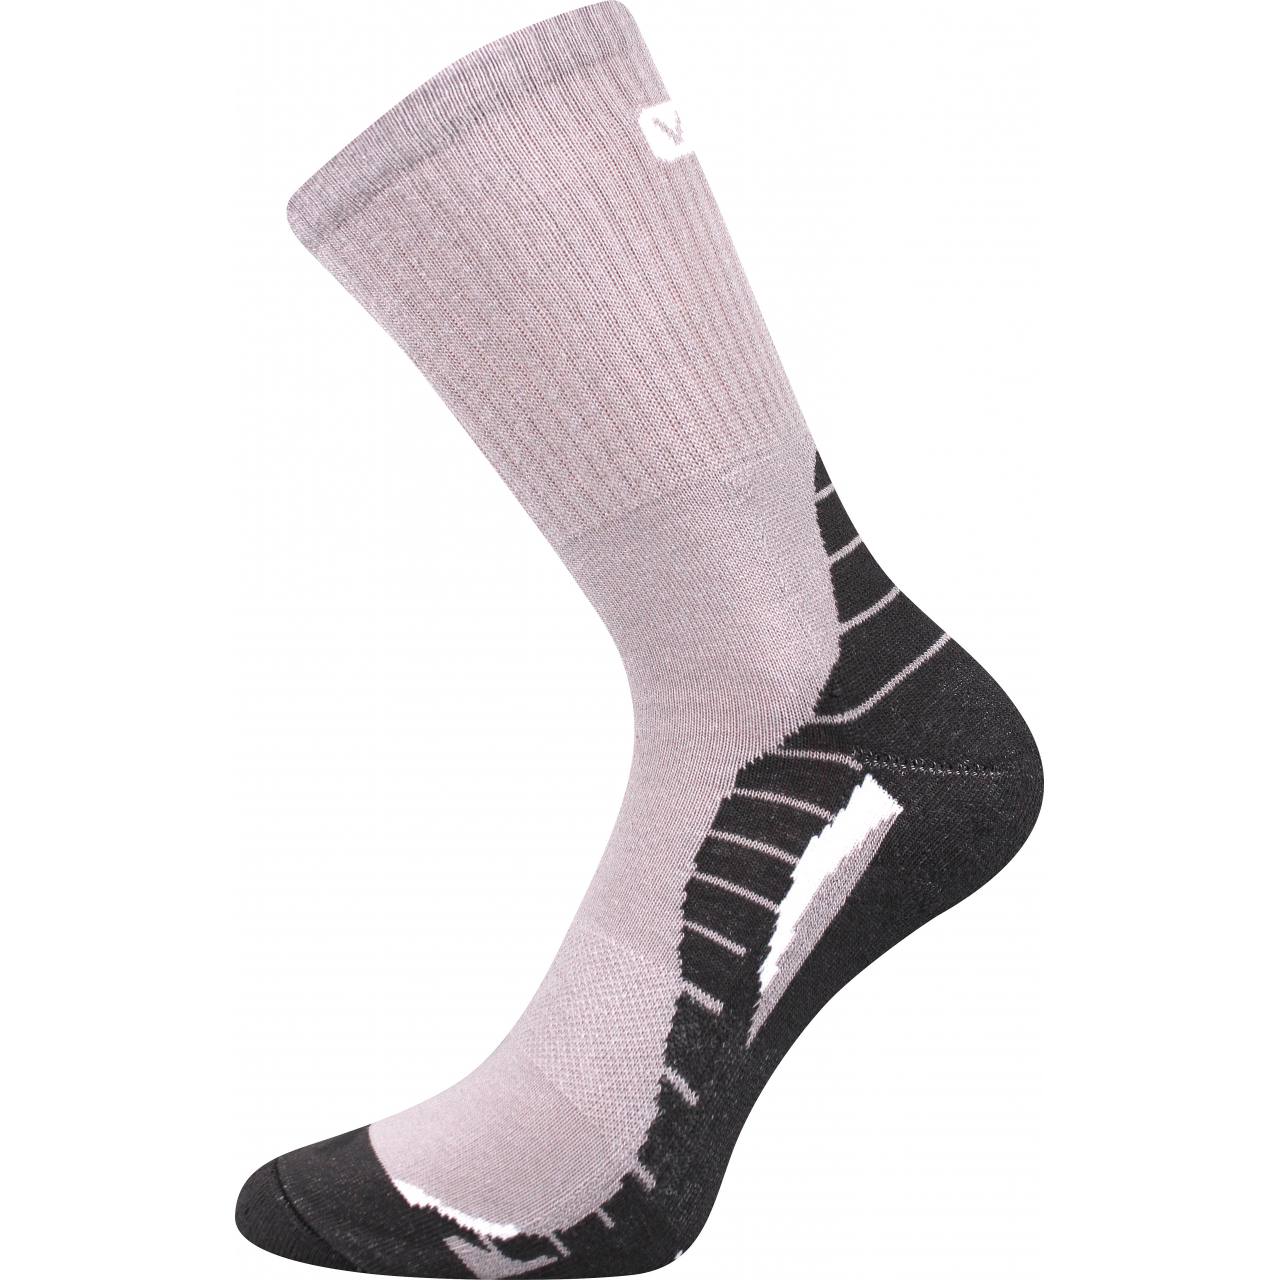 Ponožky unisex sportovní Voxx Trim - šedé-černé, 43-46